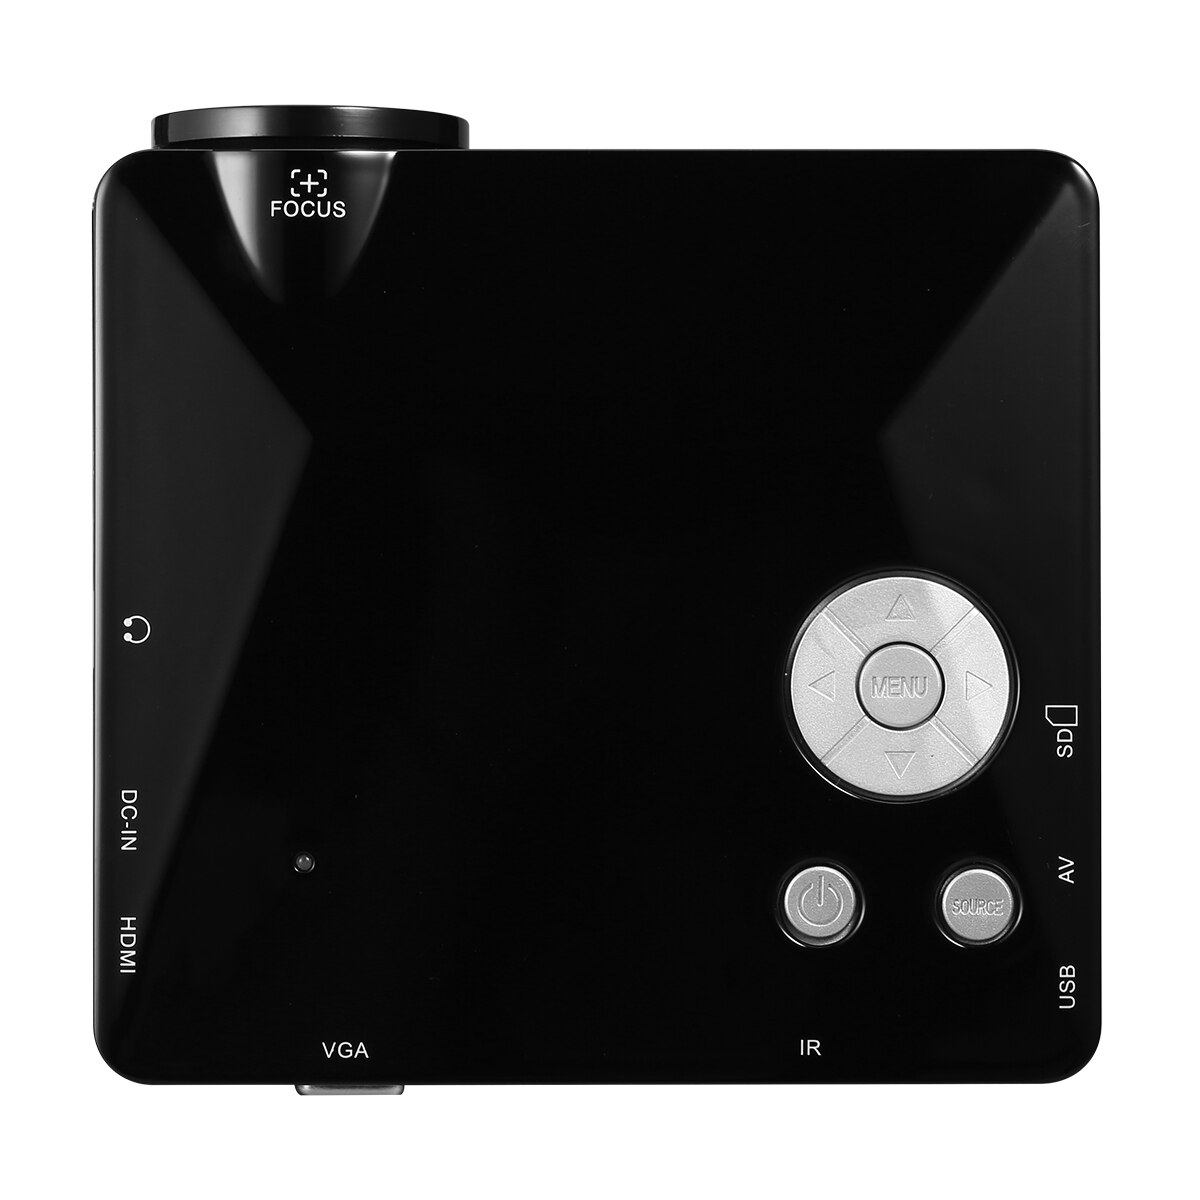 Excelvan bl -18 mini led projektor multimediedisplay understøtter 1080p smartphone bærbar dvd tv boks med hdmi vga av sd usb port: Sort